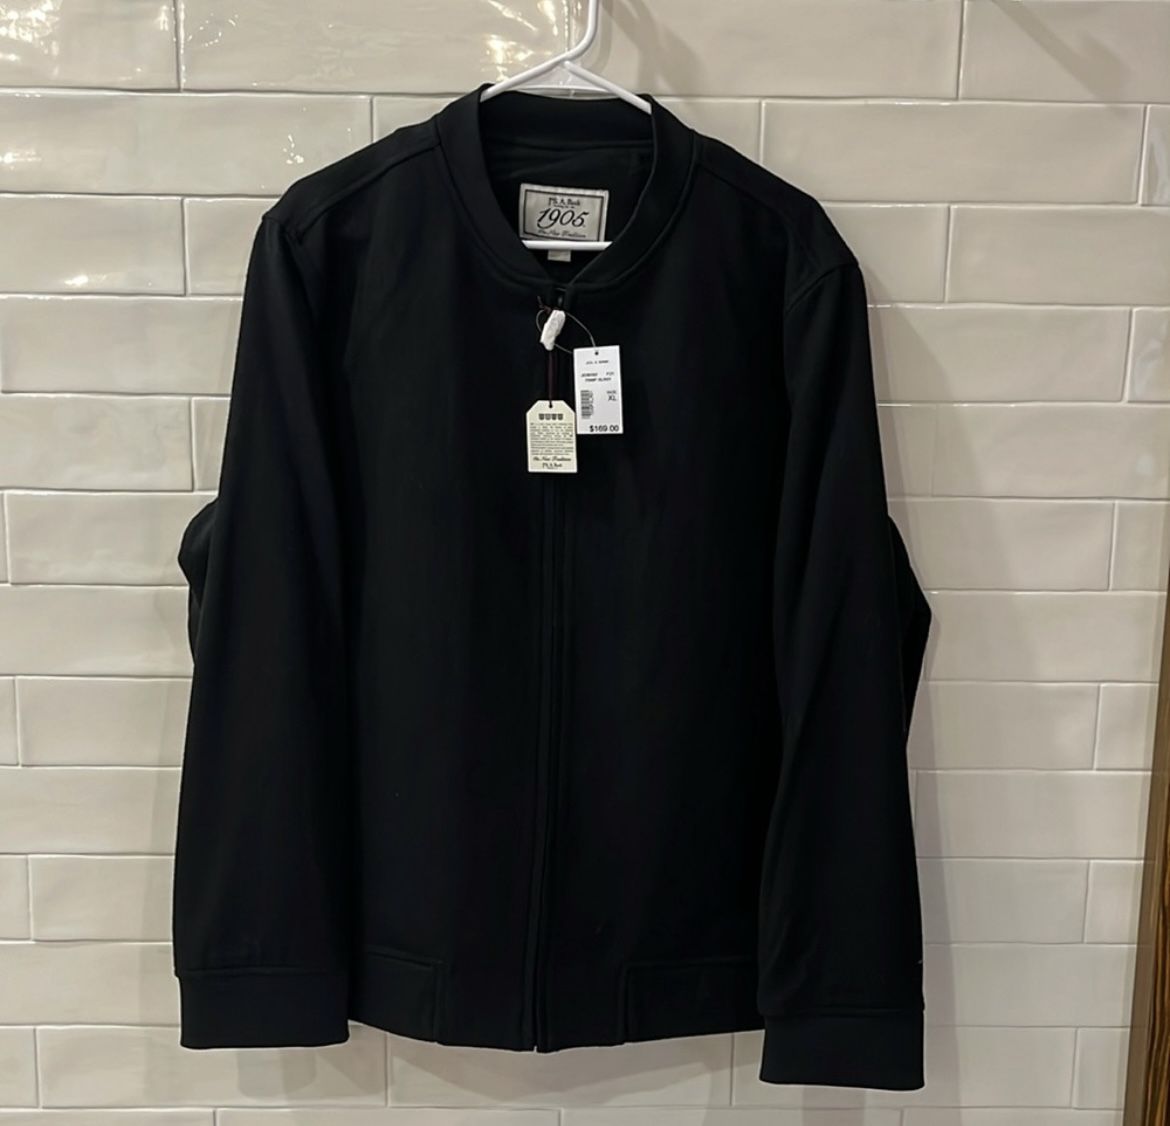 NWT Jos. A. Bank 1905 Men’s Black Wool Blend XL Jacket Bomber Dress Coat Style